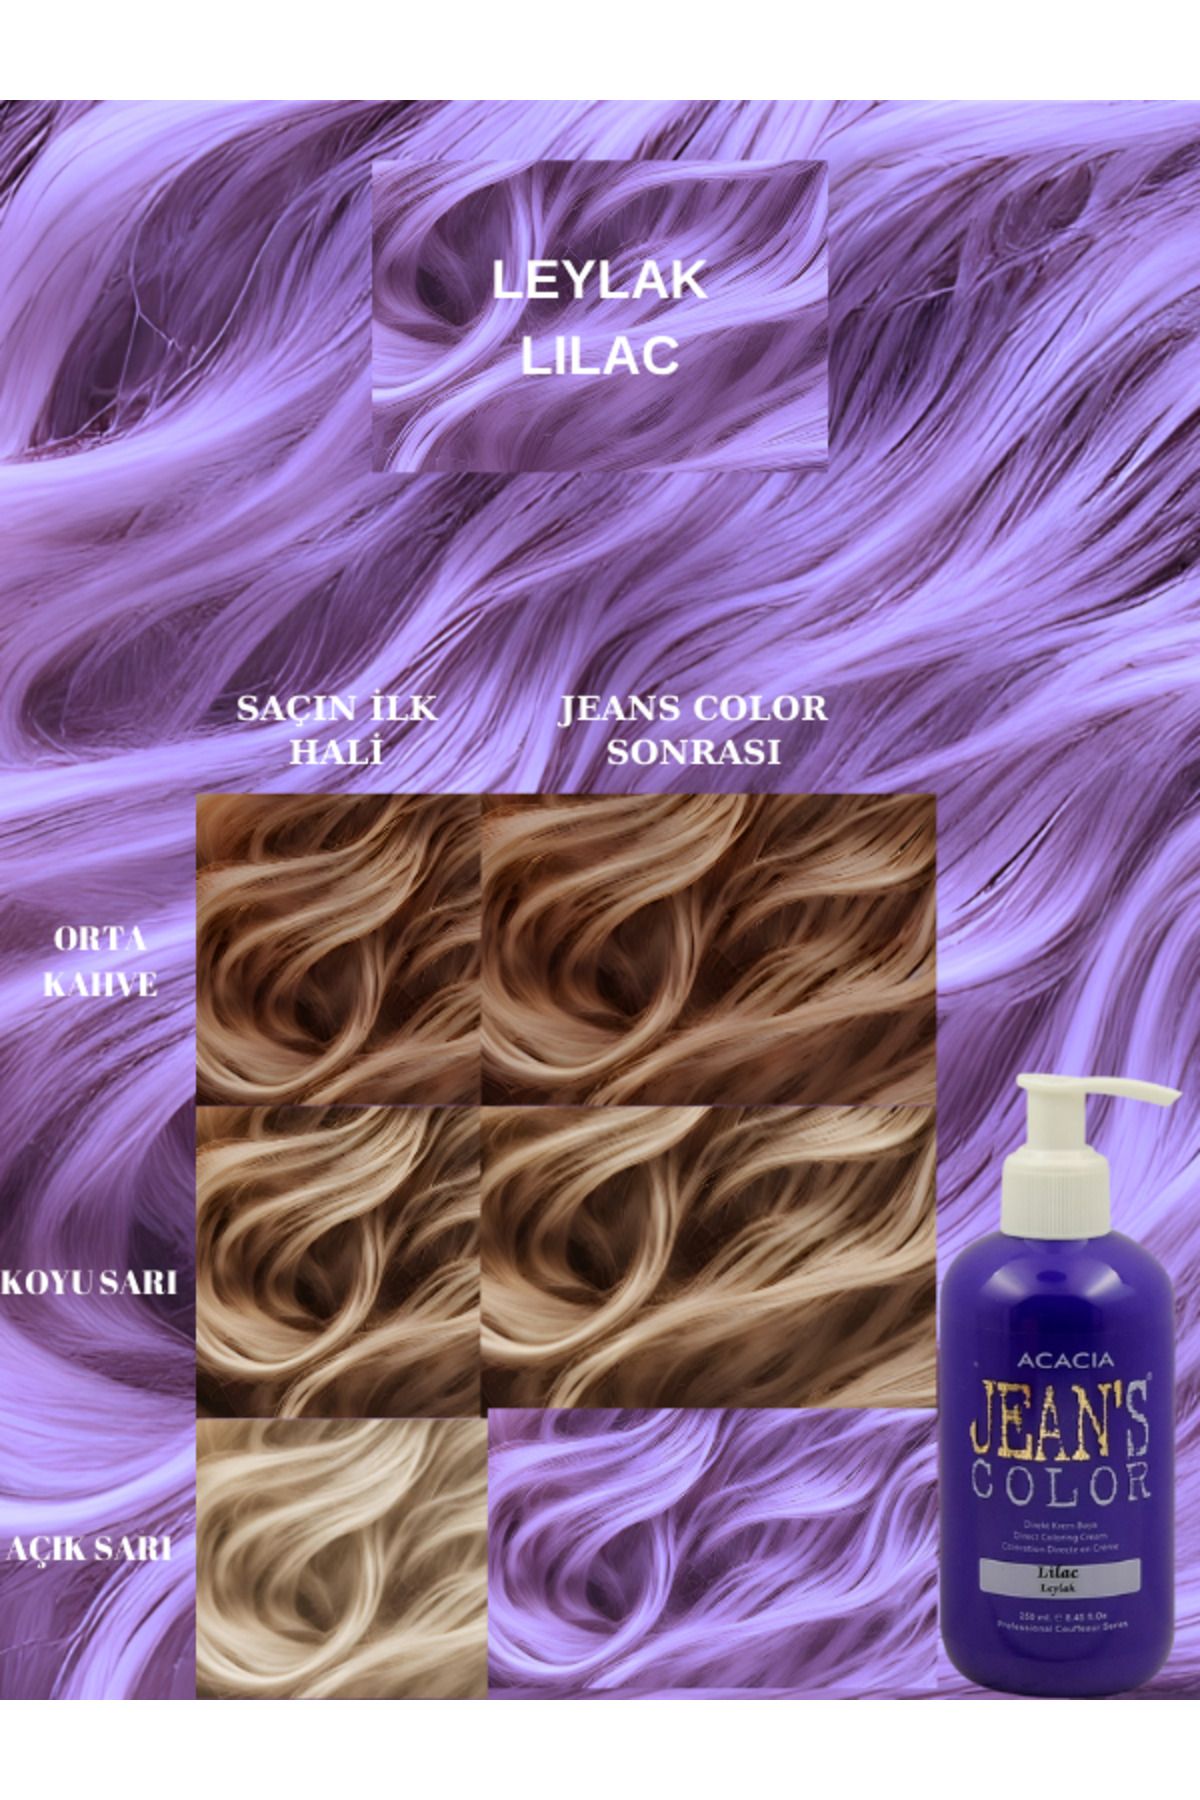 jeans color Amonyaksız Renkli Saç Boyası Leylak 250 Ml. Kokusuz Su Bazlı Lılac Hair Dye